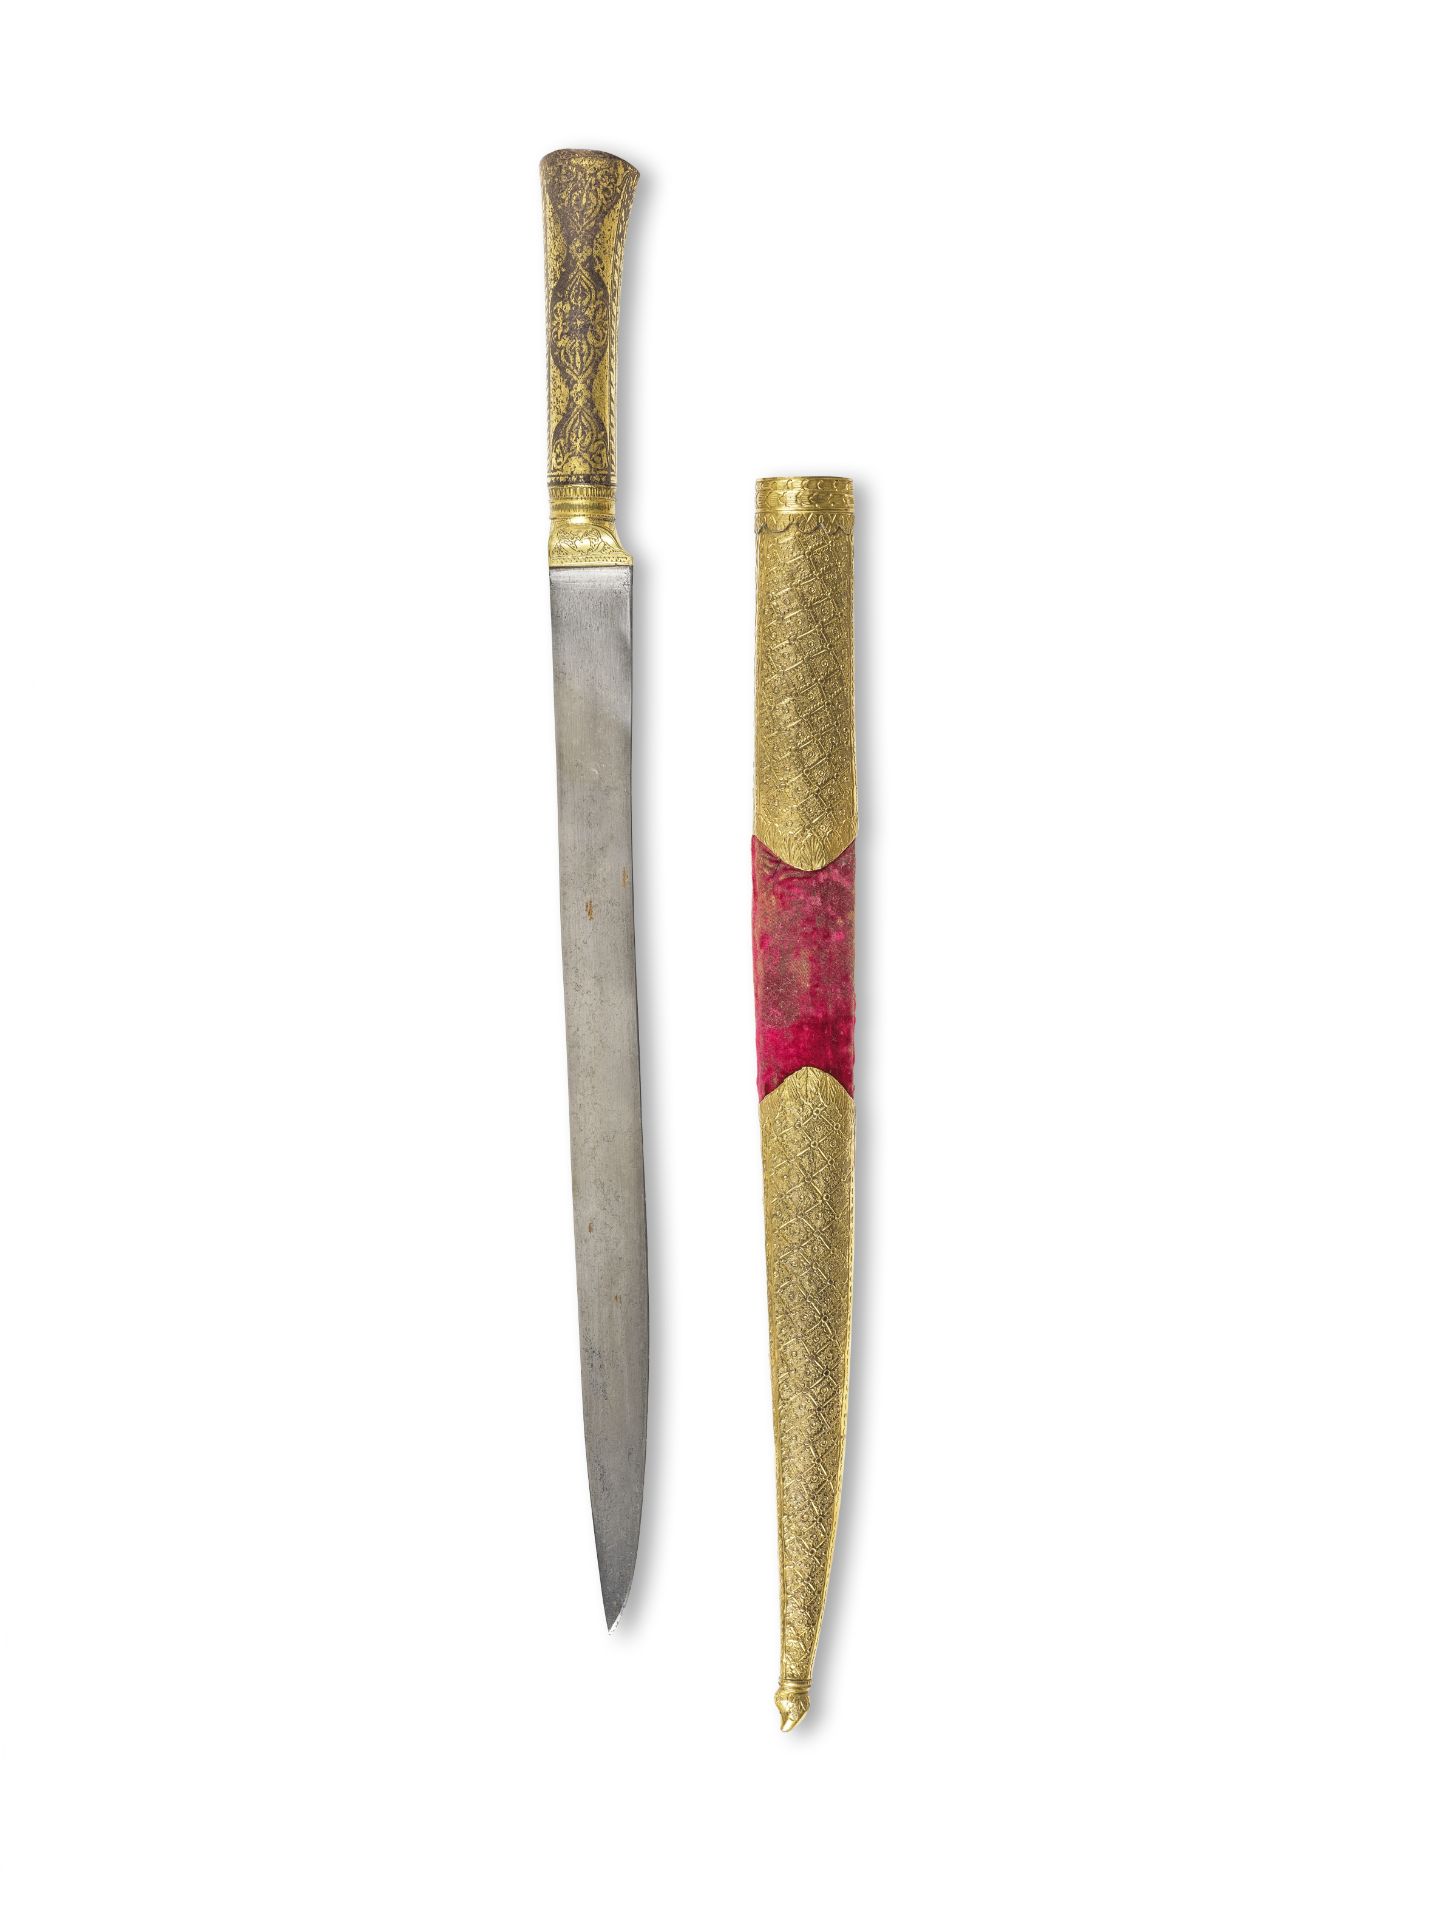 Dague en acier &#224; manche damasquin&#233; or (kard), Turquie XIXe si&#232;cle A gold-damascen...